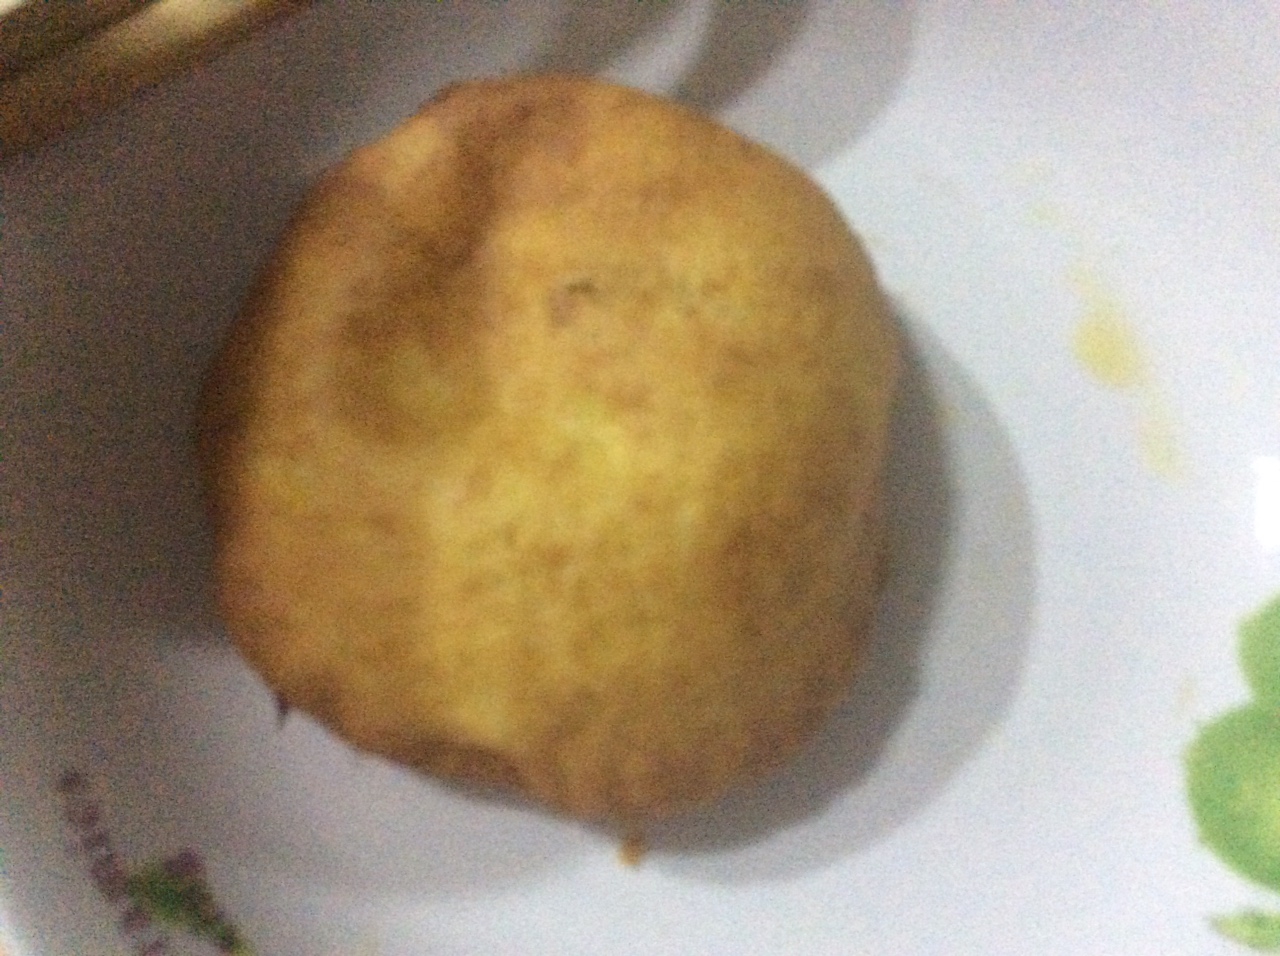 南瓜油饼